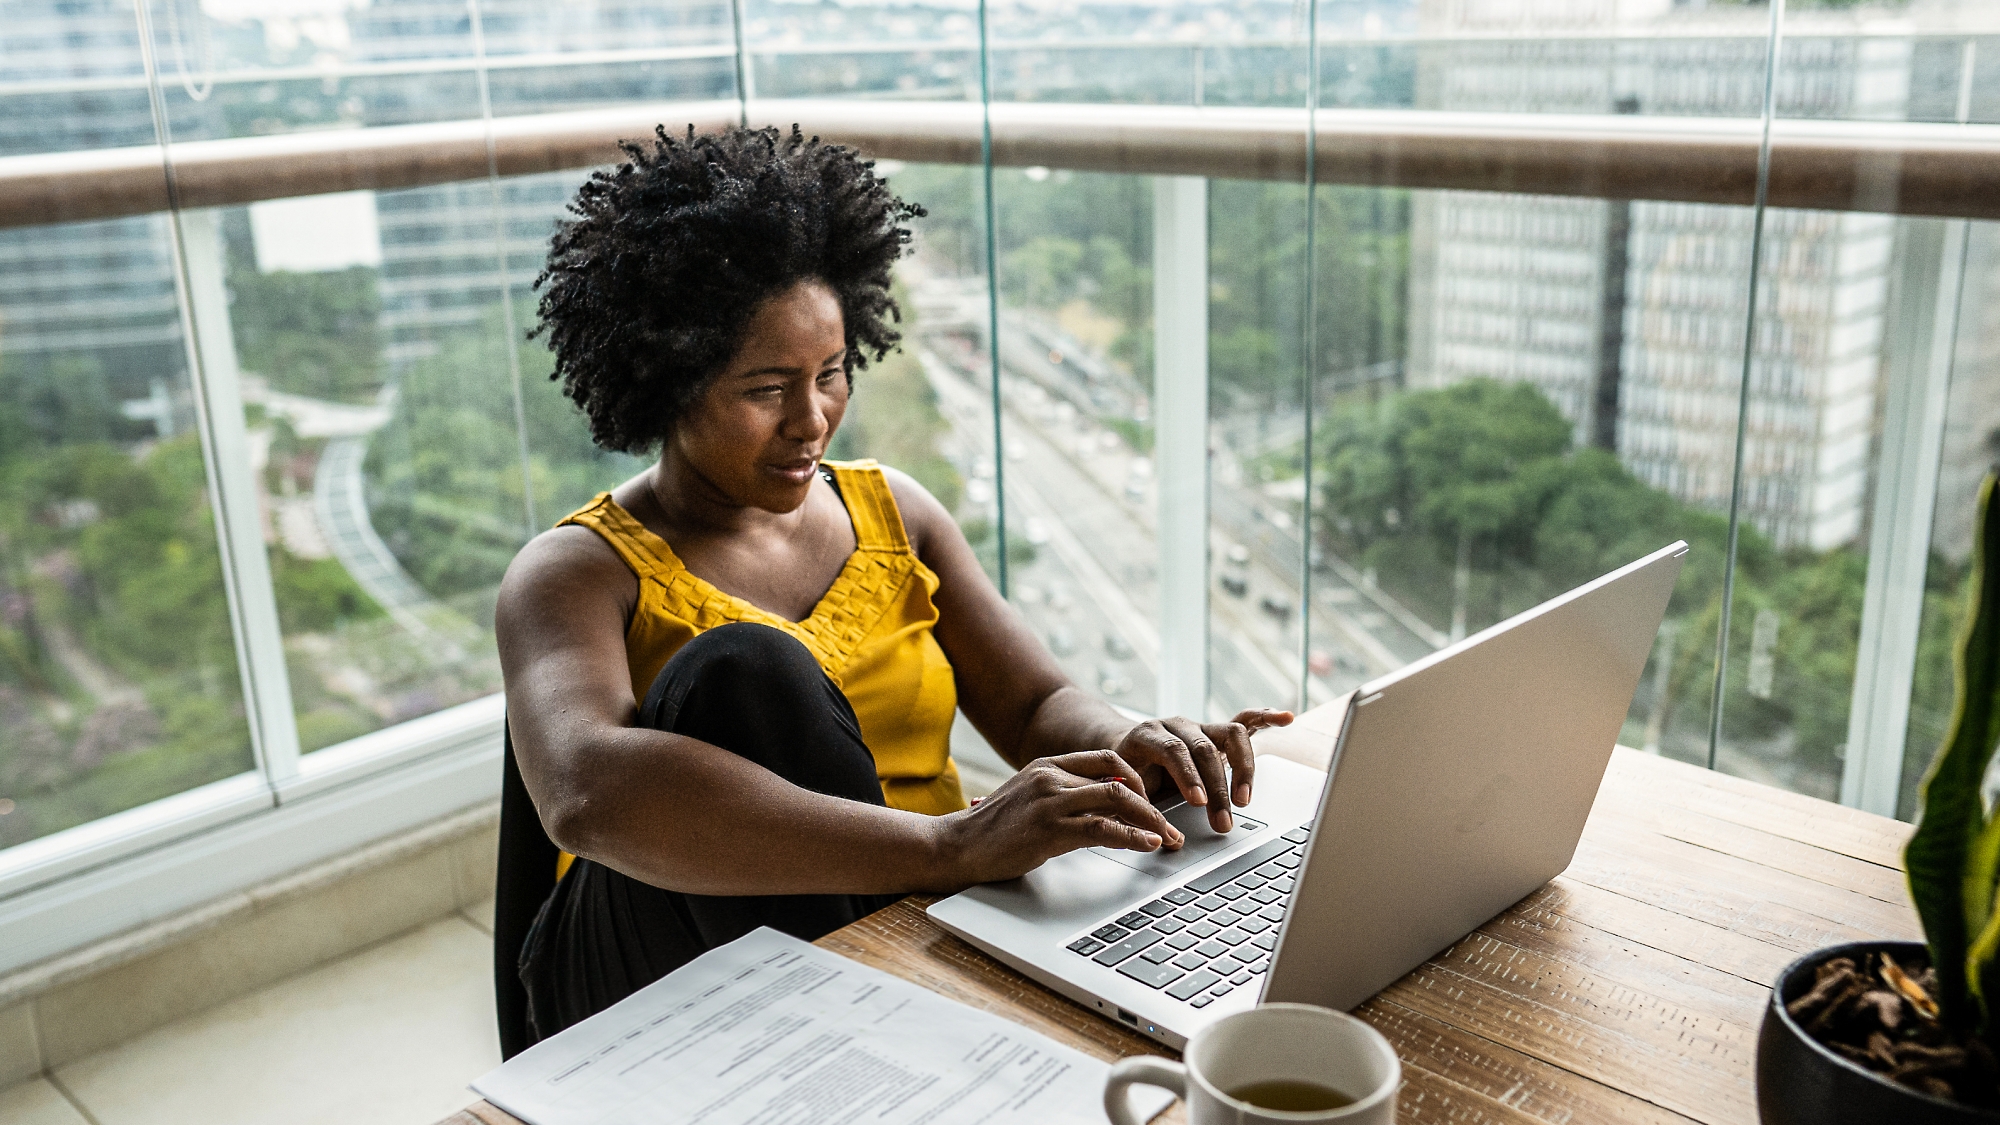 Une femme travaille sur un ordinateur portable à un bureau près d’une fenêtre qui donne sur un paysage urbain, avec des documents et une tasse de café à proximité.